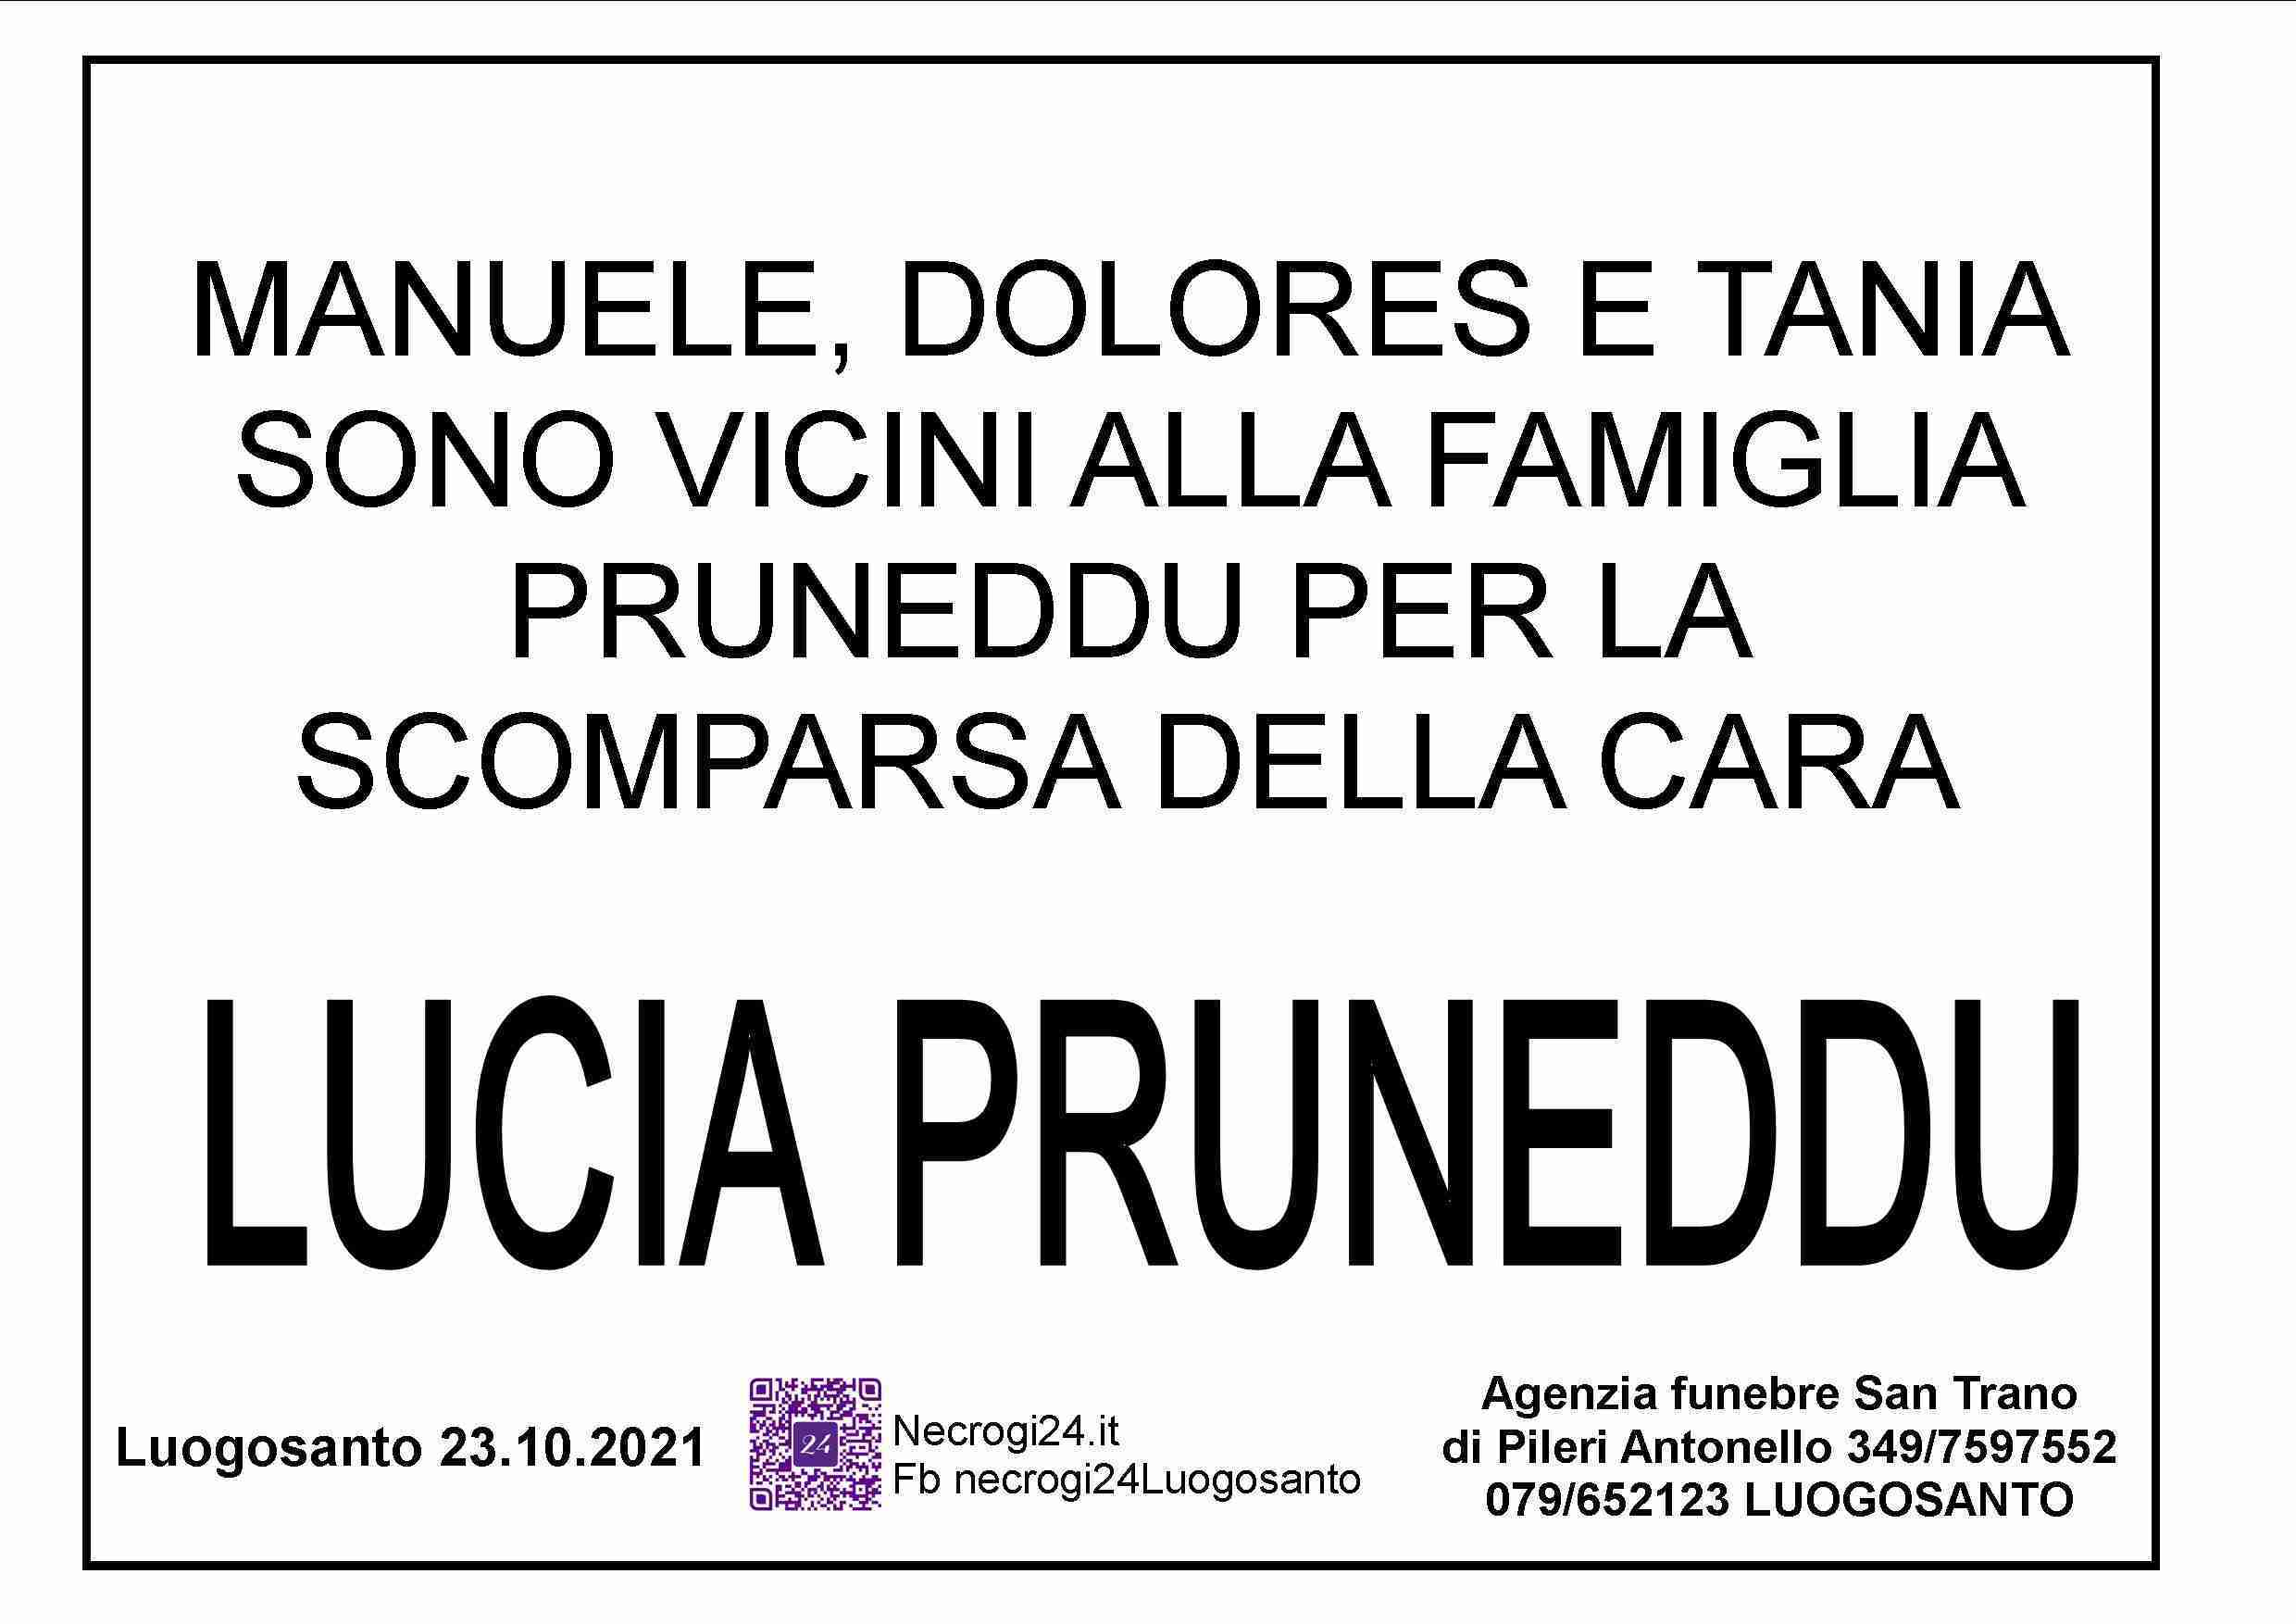 Lucia Pruneddu